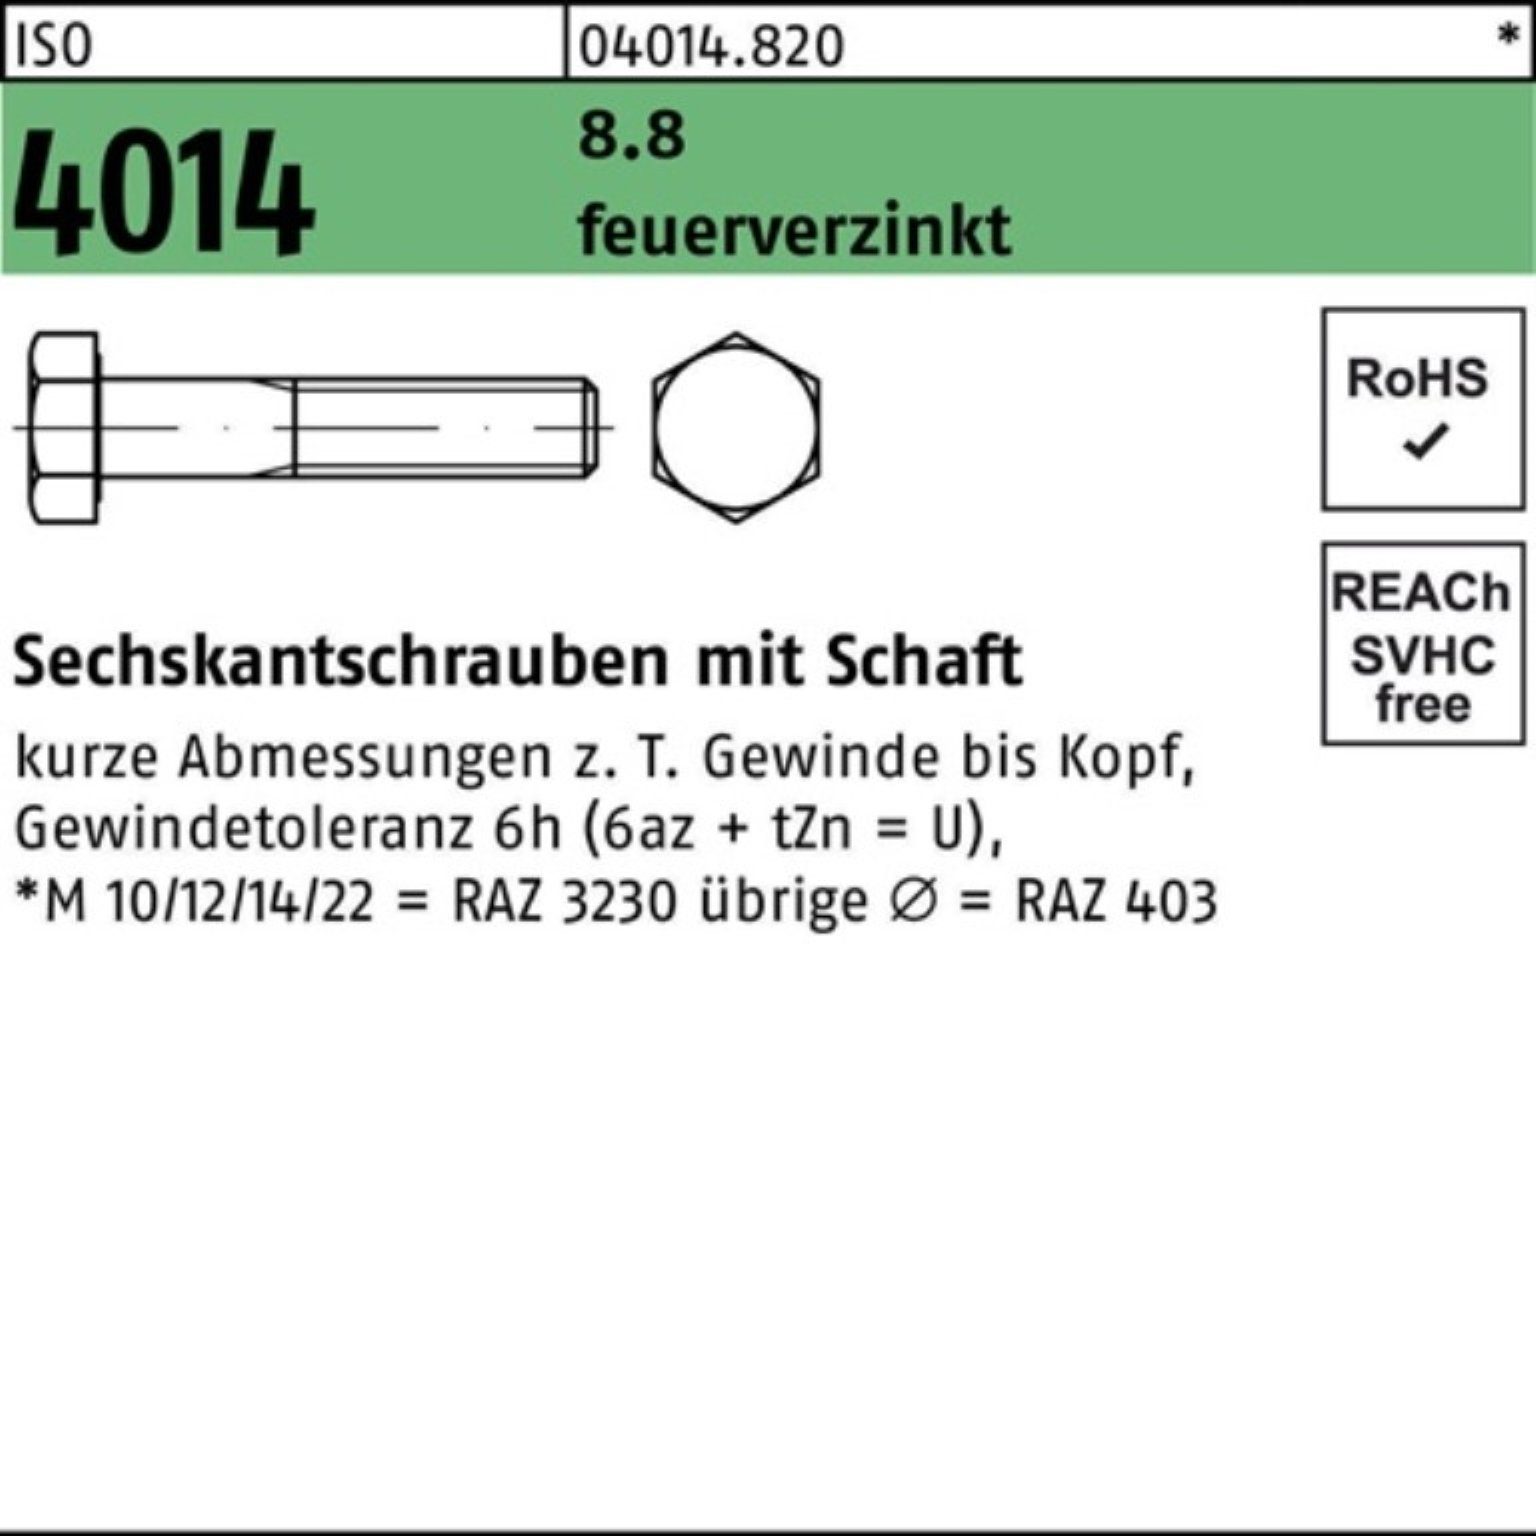 Bufab Sechskantschraube 100er Pack Sechskantschraube ISO 4014 Schaft M16x 75 8.8 feuerverz. 25